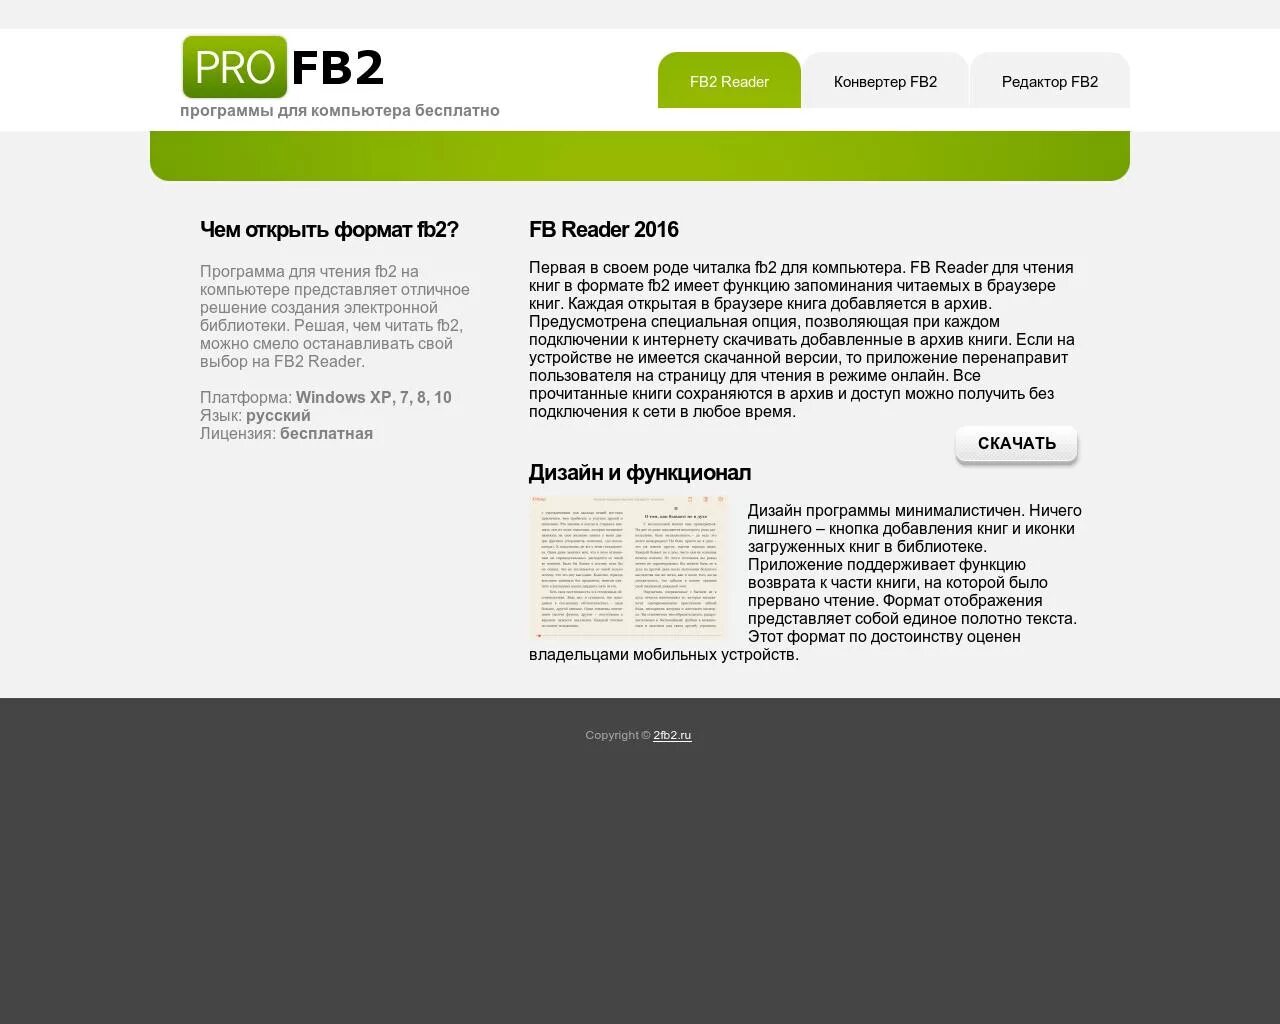 Читать книги формат fb2. Формат fb2. Читалка fb2 для компьютера. Читалка fb2. Программа для чтения книг fb2 на компьютере.